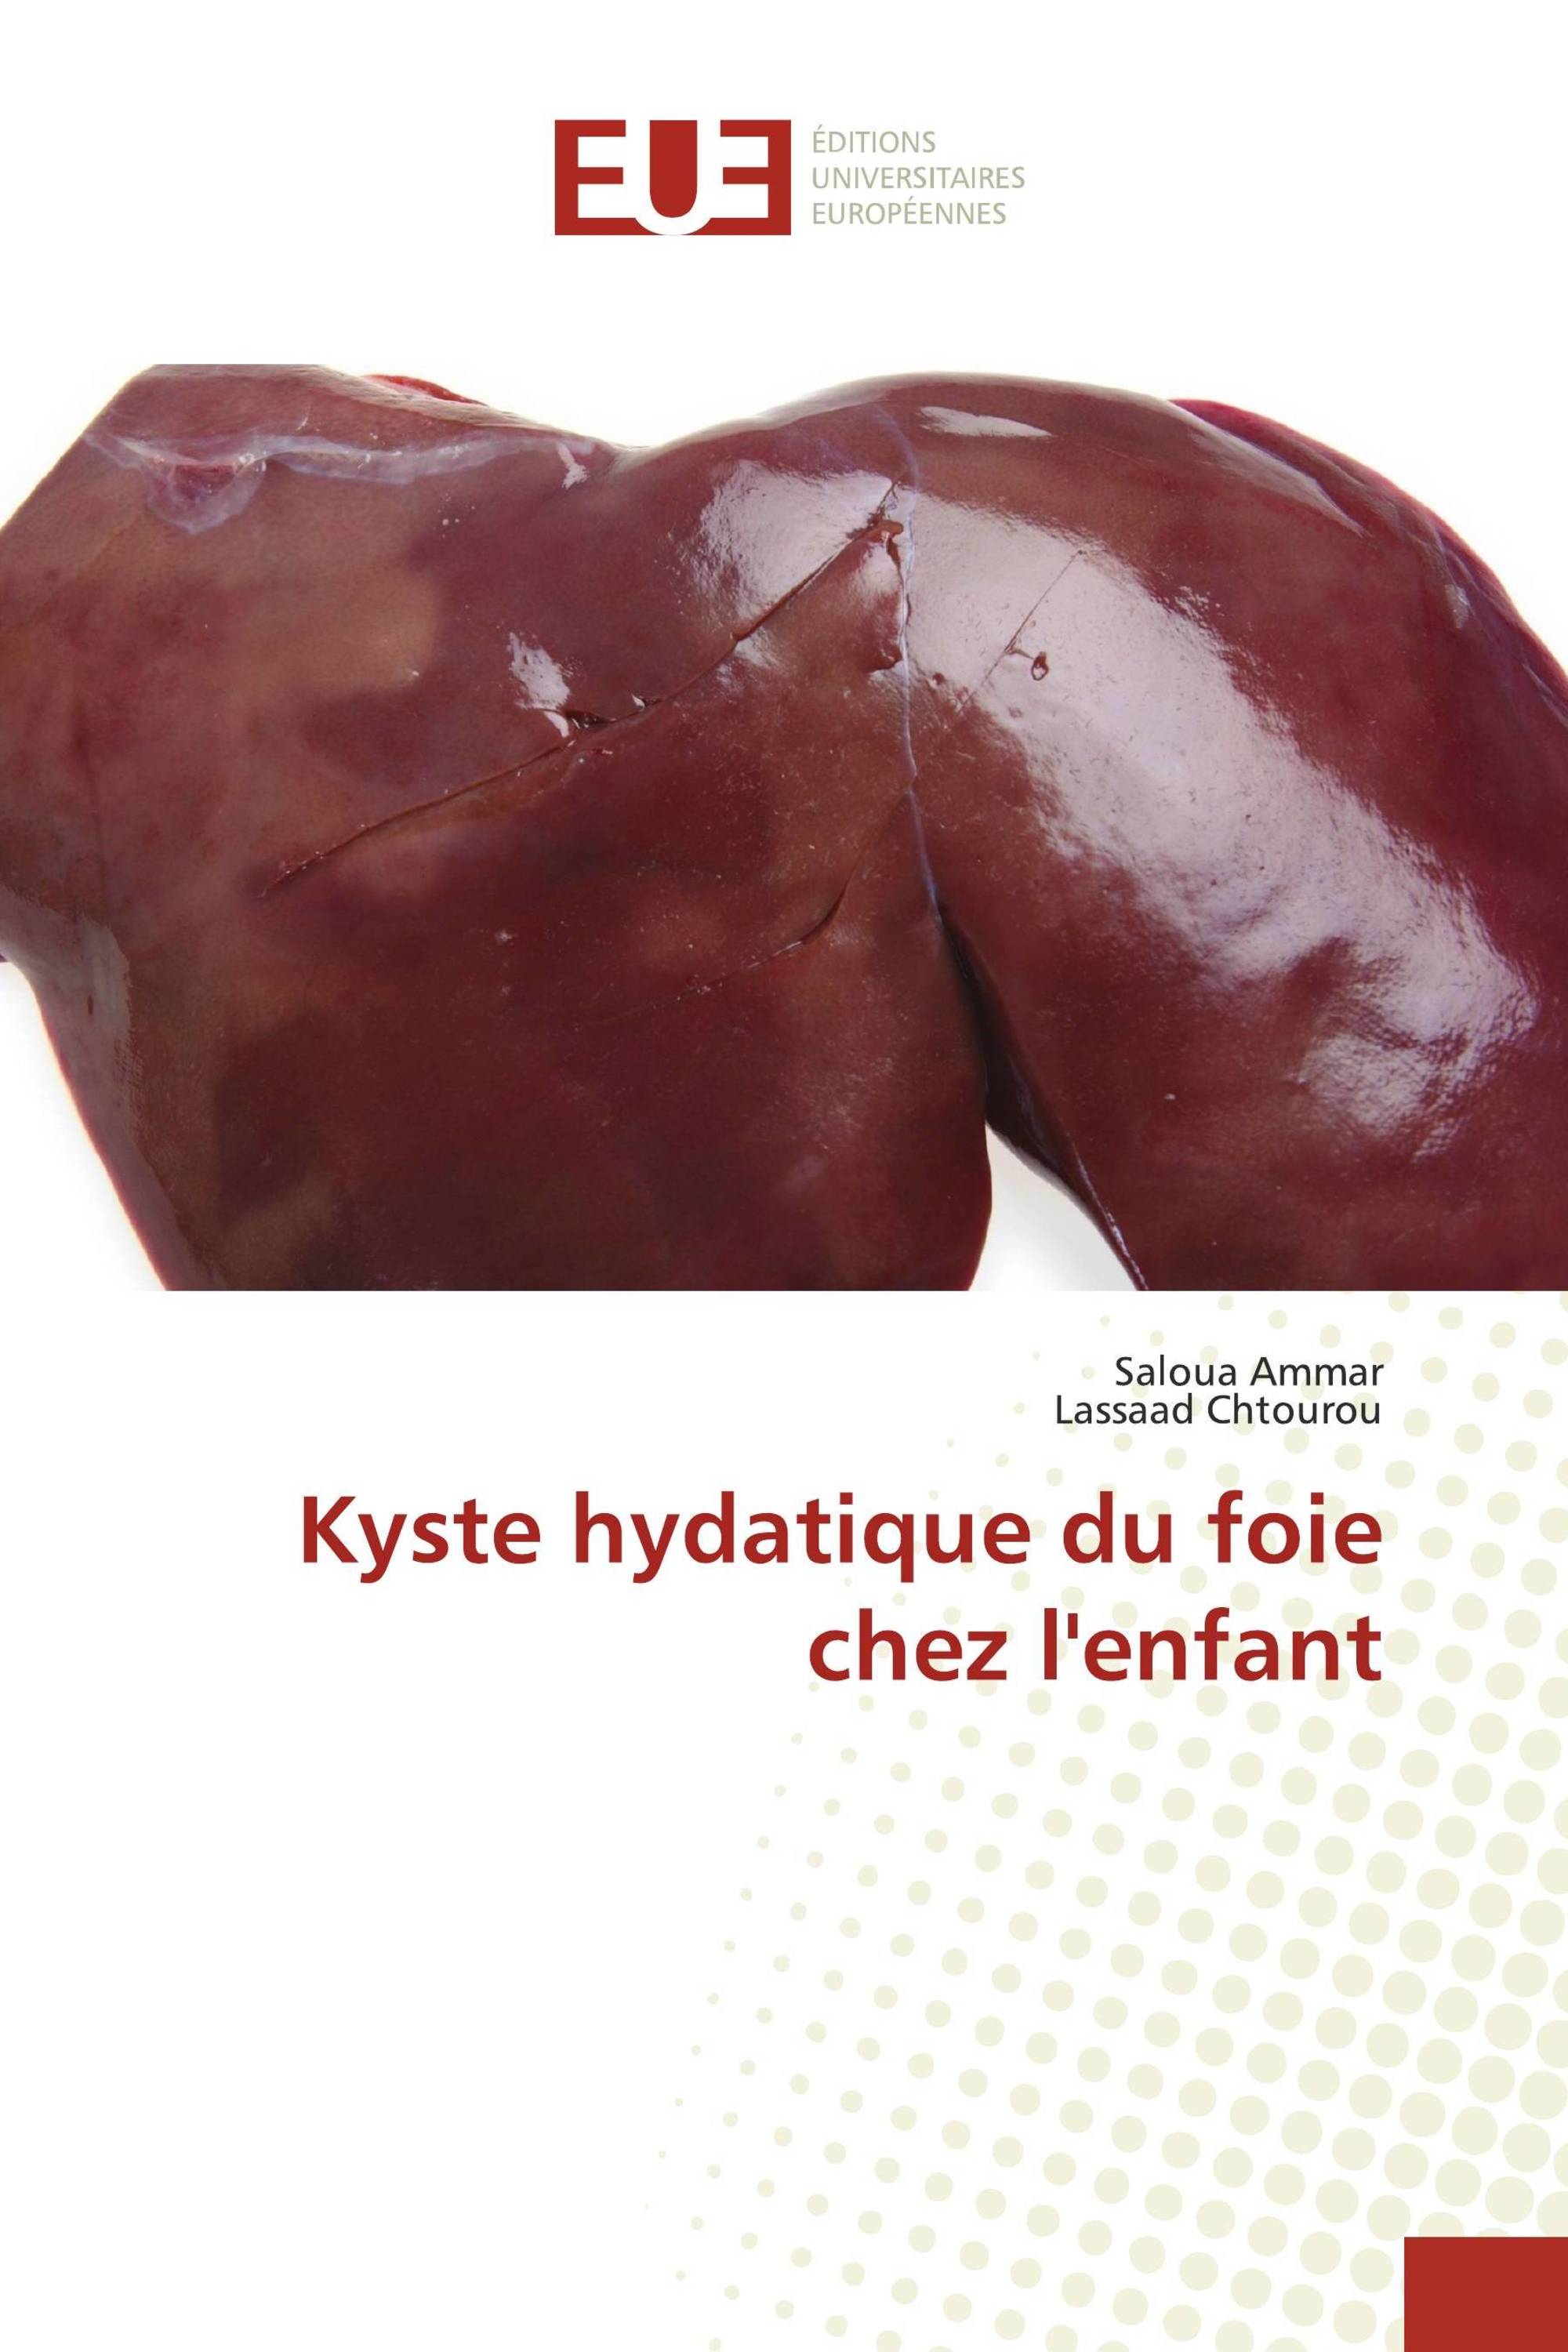 Kyste hydatique du foie chez l'enfant